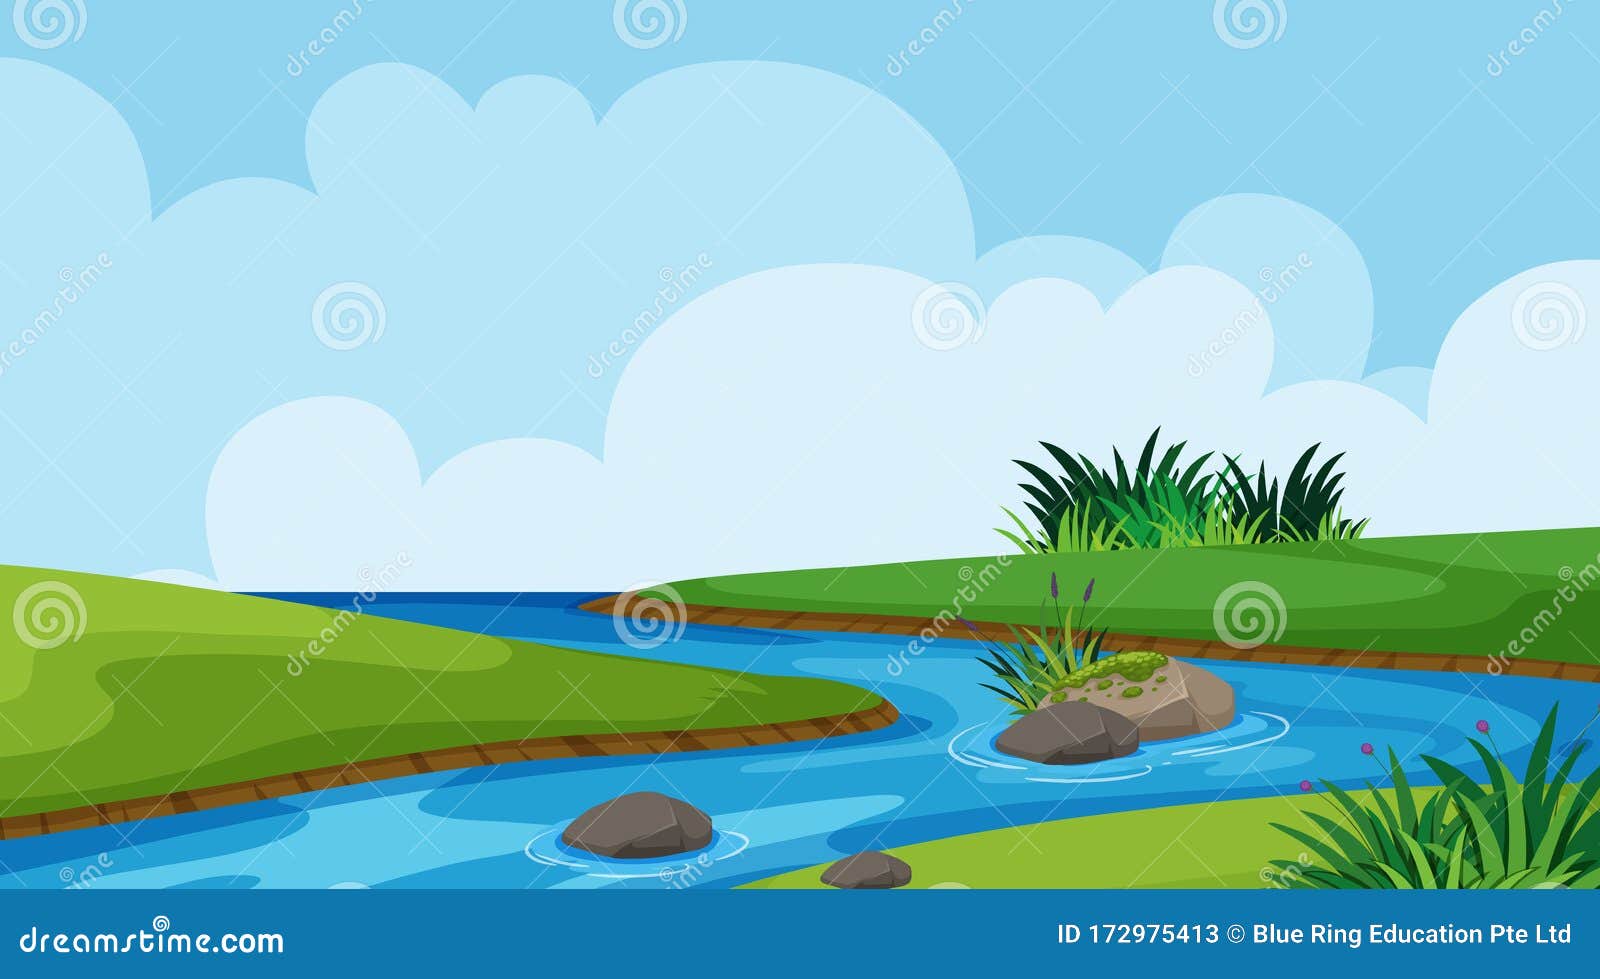 Khám phá thiết kế phông nền cảnh sông và cỏ đẹp tự nhiên cho những bức ảnh và thiết kế của bạn. Với một màu xanh nhẹ nhàng, tạo cảm giác yên bình, phông nền này sẽ làm cho bức ảnh của bạn trở nên hoàn hảo hơn bao giờ hết. Click ngay để xem chi tiết và cùng sáng tạo nào! 